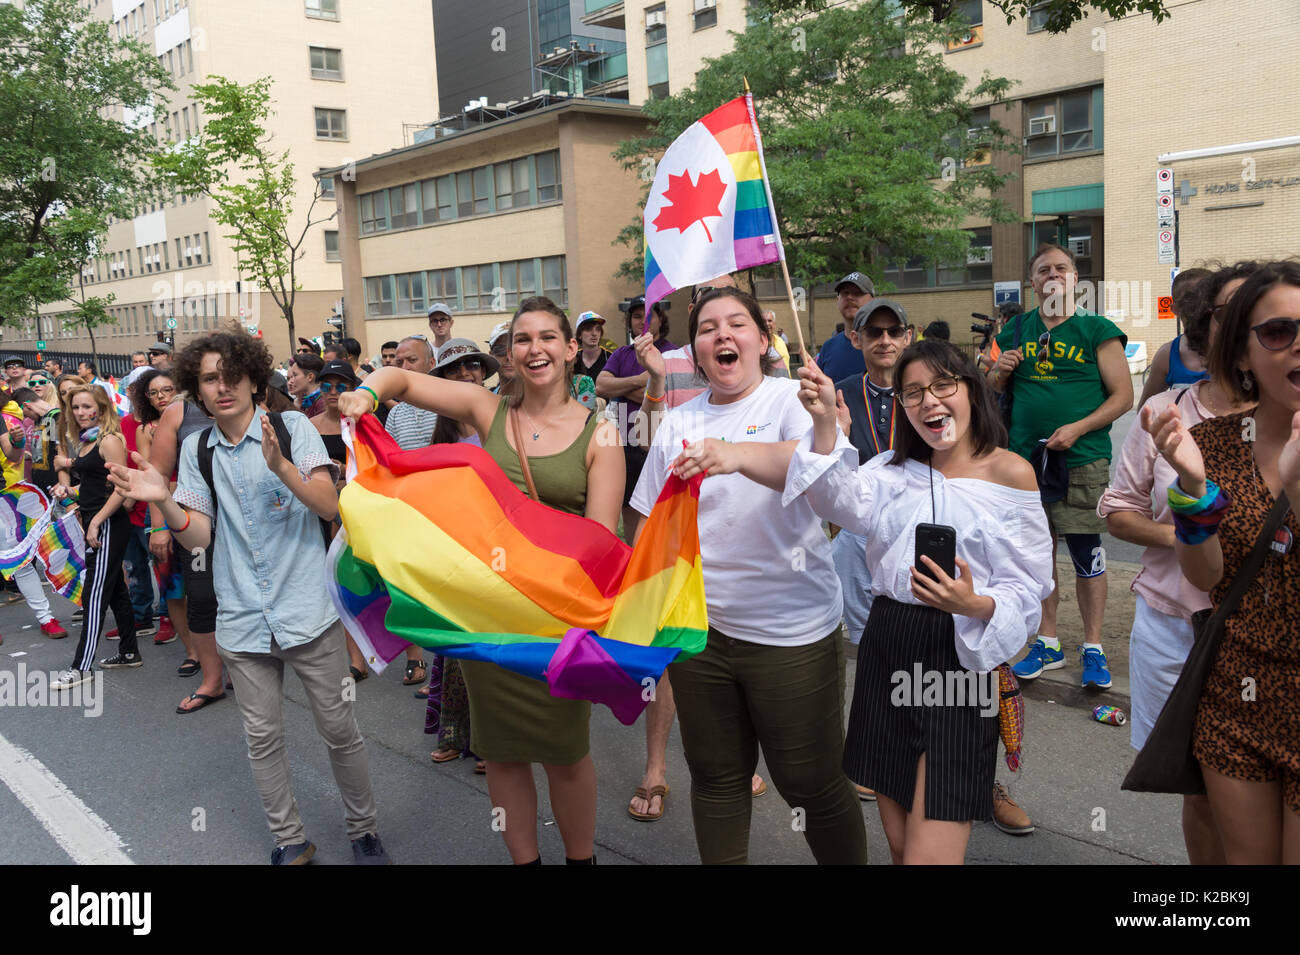 Montréal, CA - 20 août 2017 : Heureux et souriant de spectateurs assistant à la parade de la Fierté gaie de Montréal. Banque D'Images